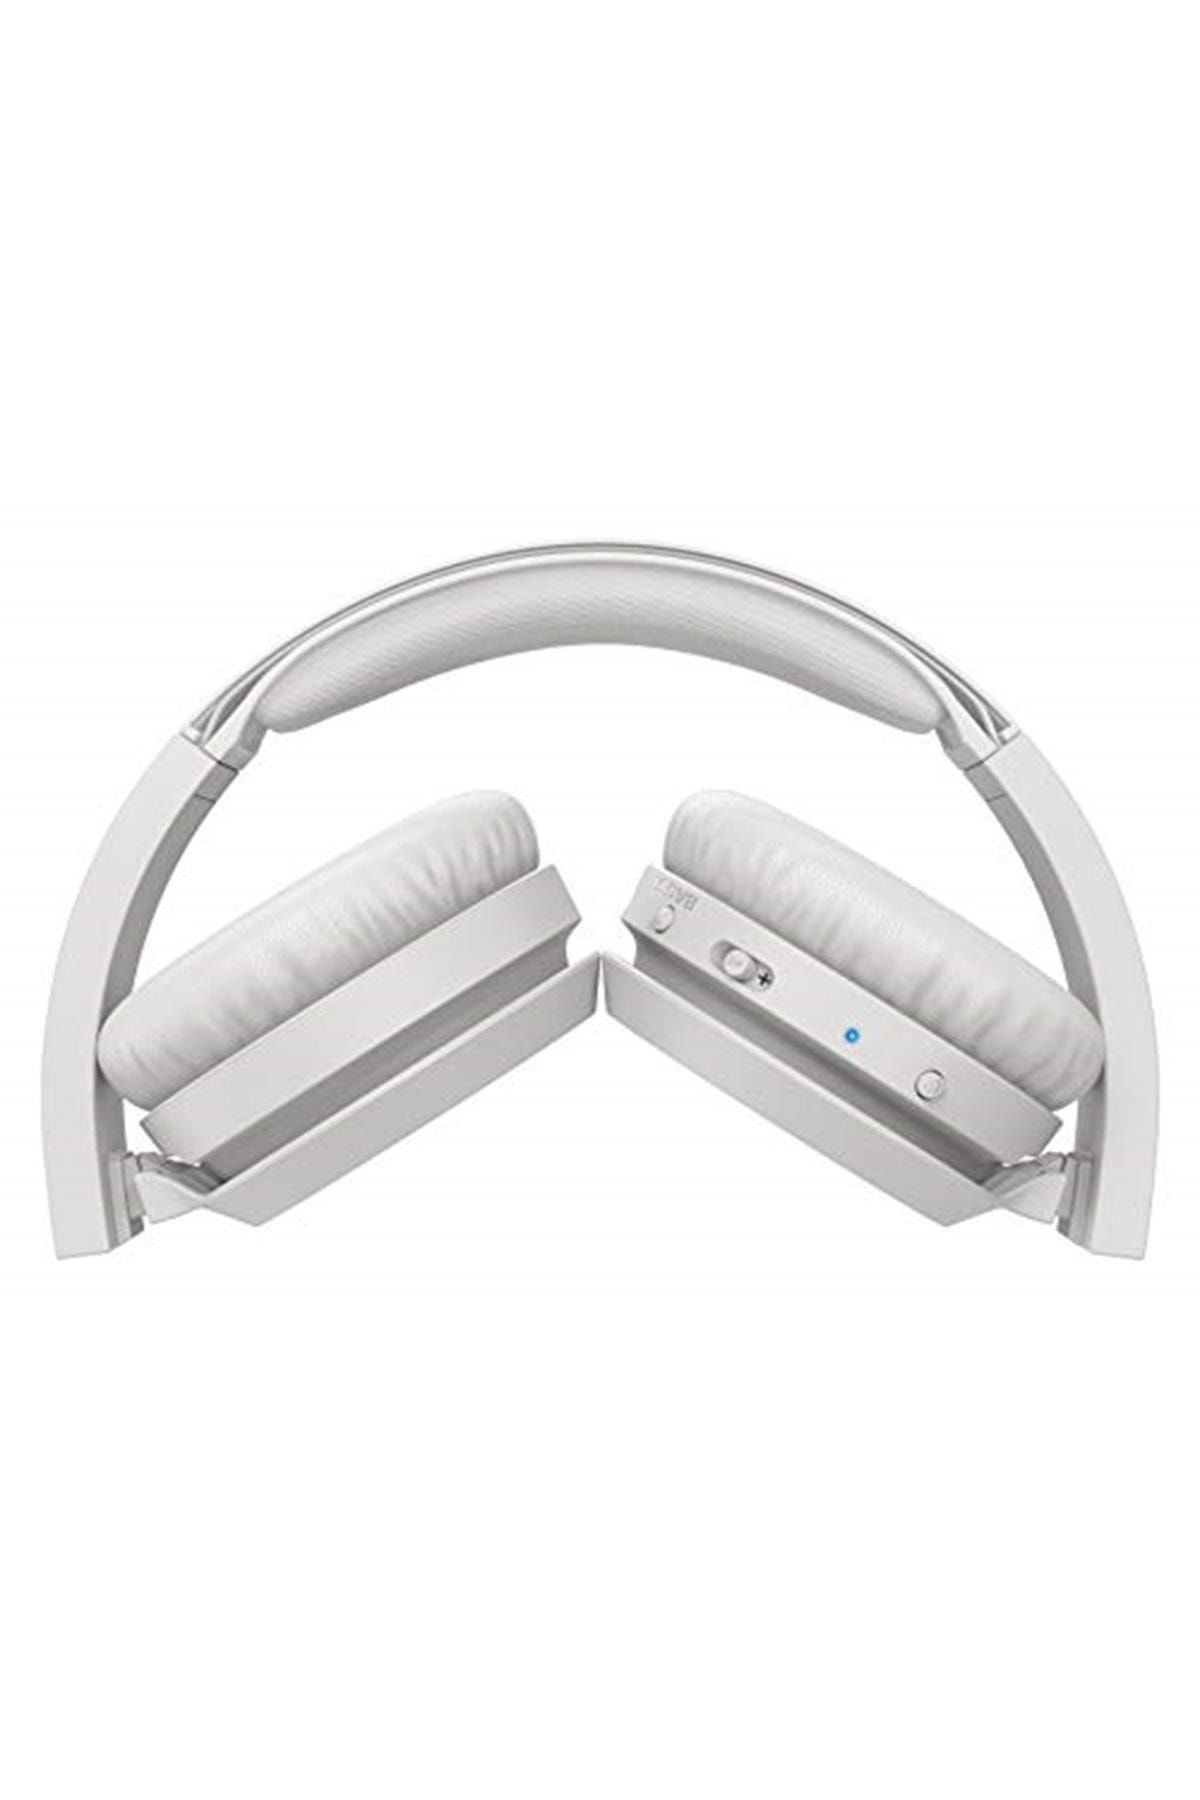 Philips Tah4205 Kablosuz Kulak Üstü Kulaklık (mikrofonlu) Beyaz - 29 Saat